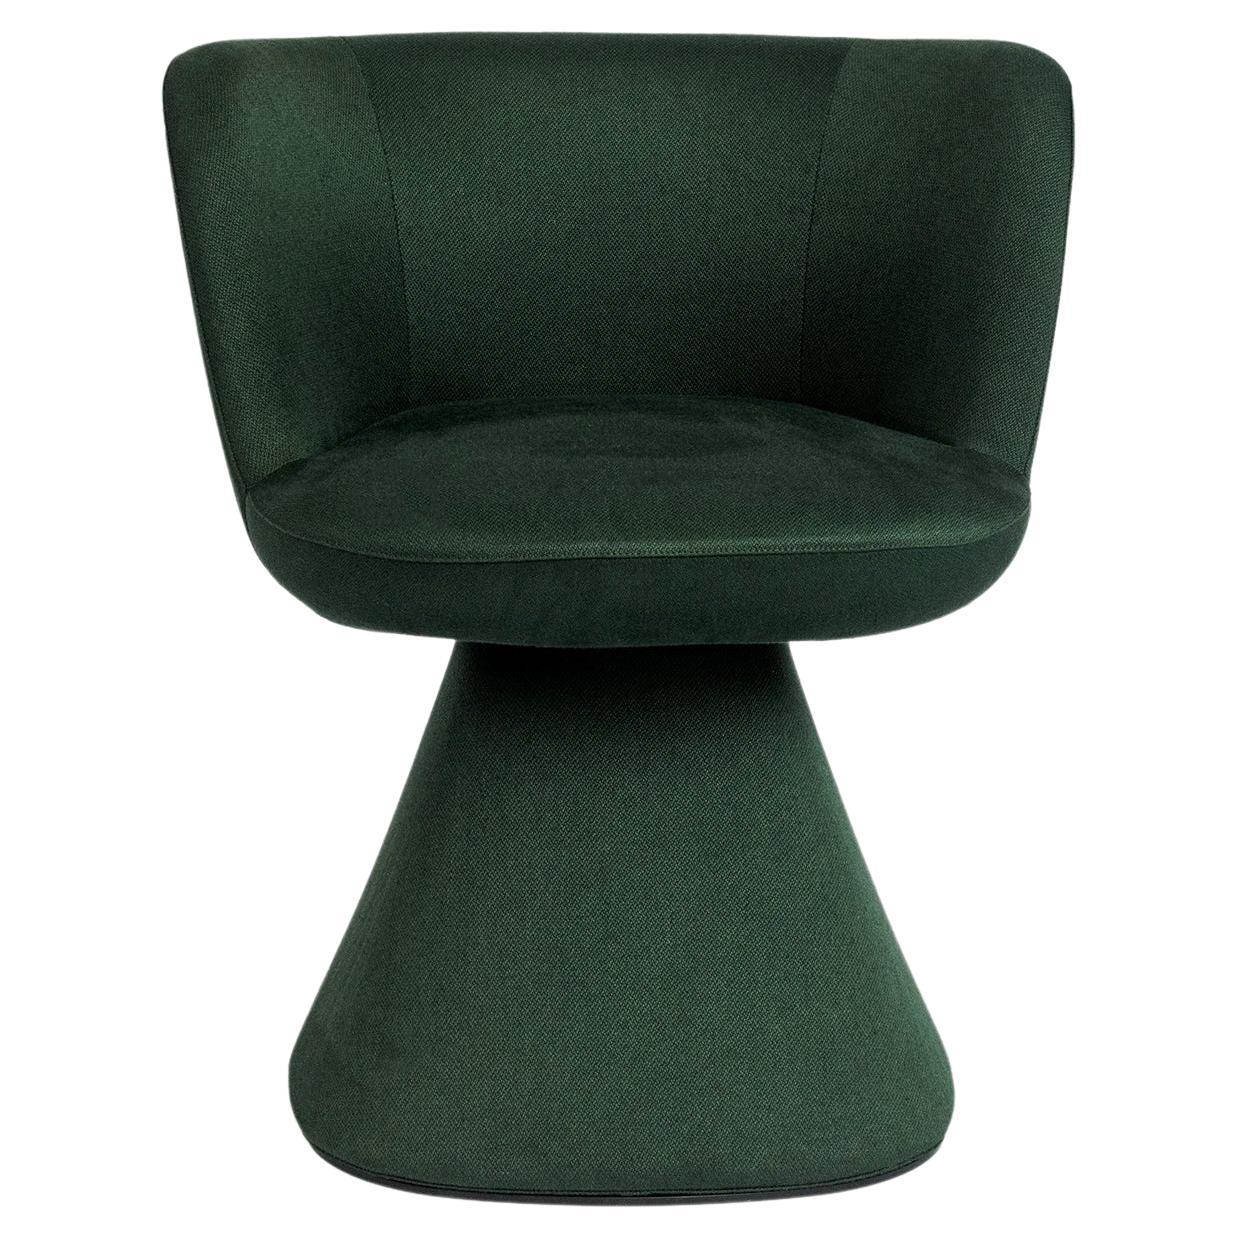 B&B Italia fauteuil de salle à manger Flair O' pivotant en satin vert forêt, disponible maintenant